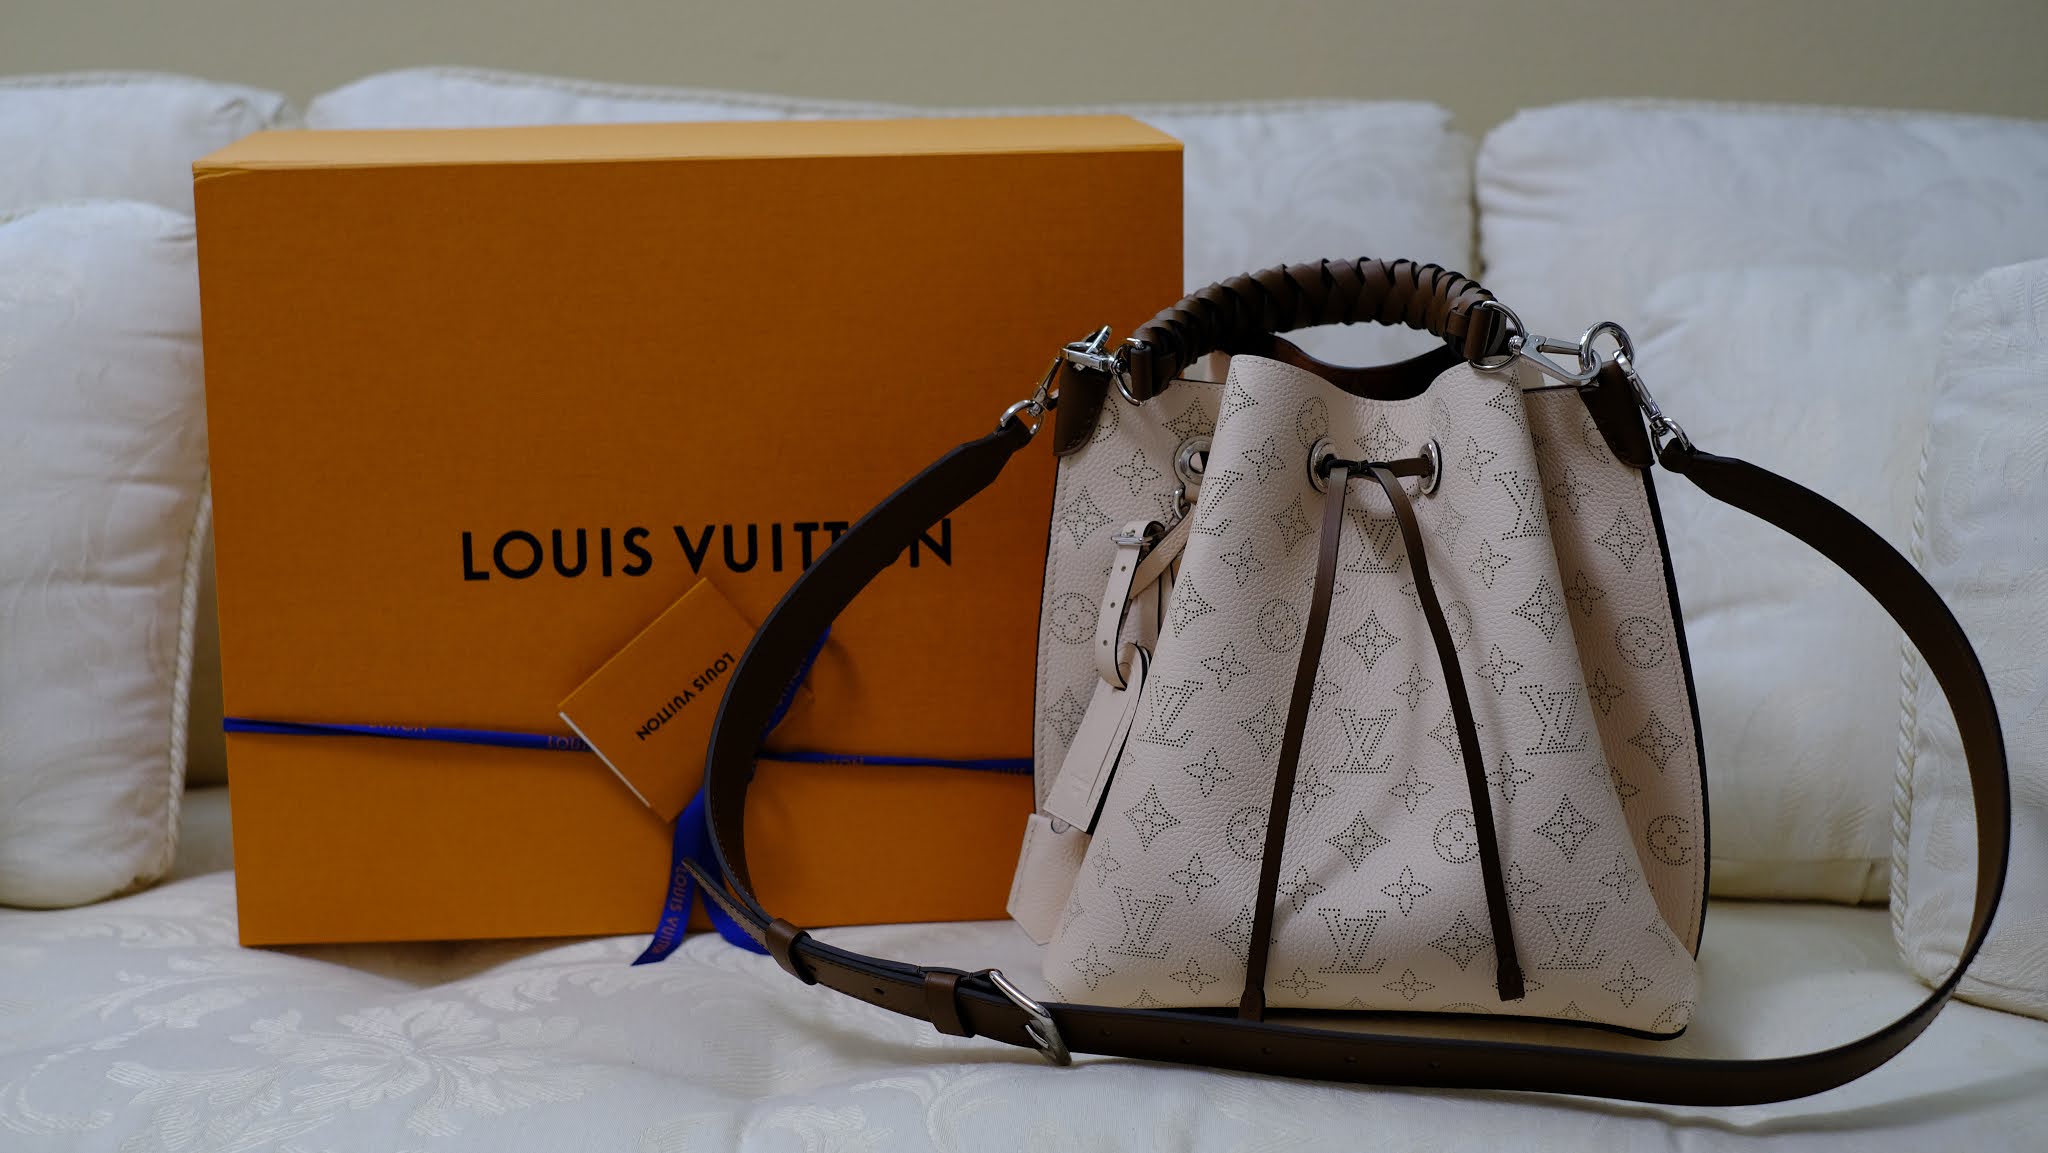 Unboxing Louis Vuitton Mahina Muria! Bucket bag Louis Vuitton! 